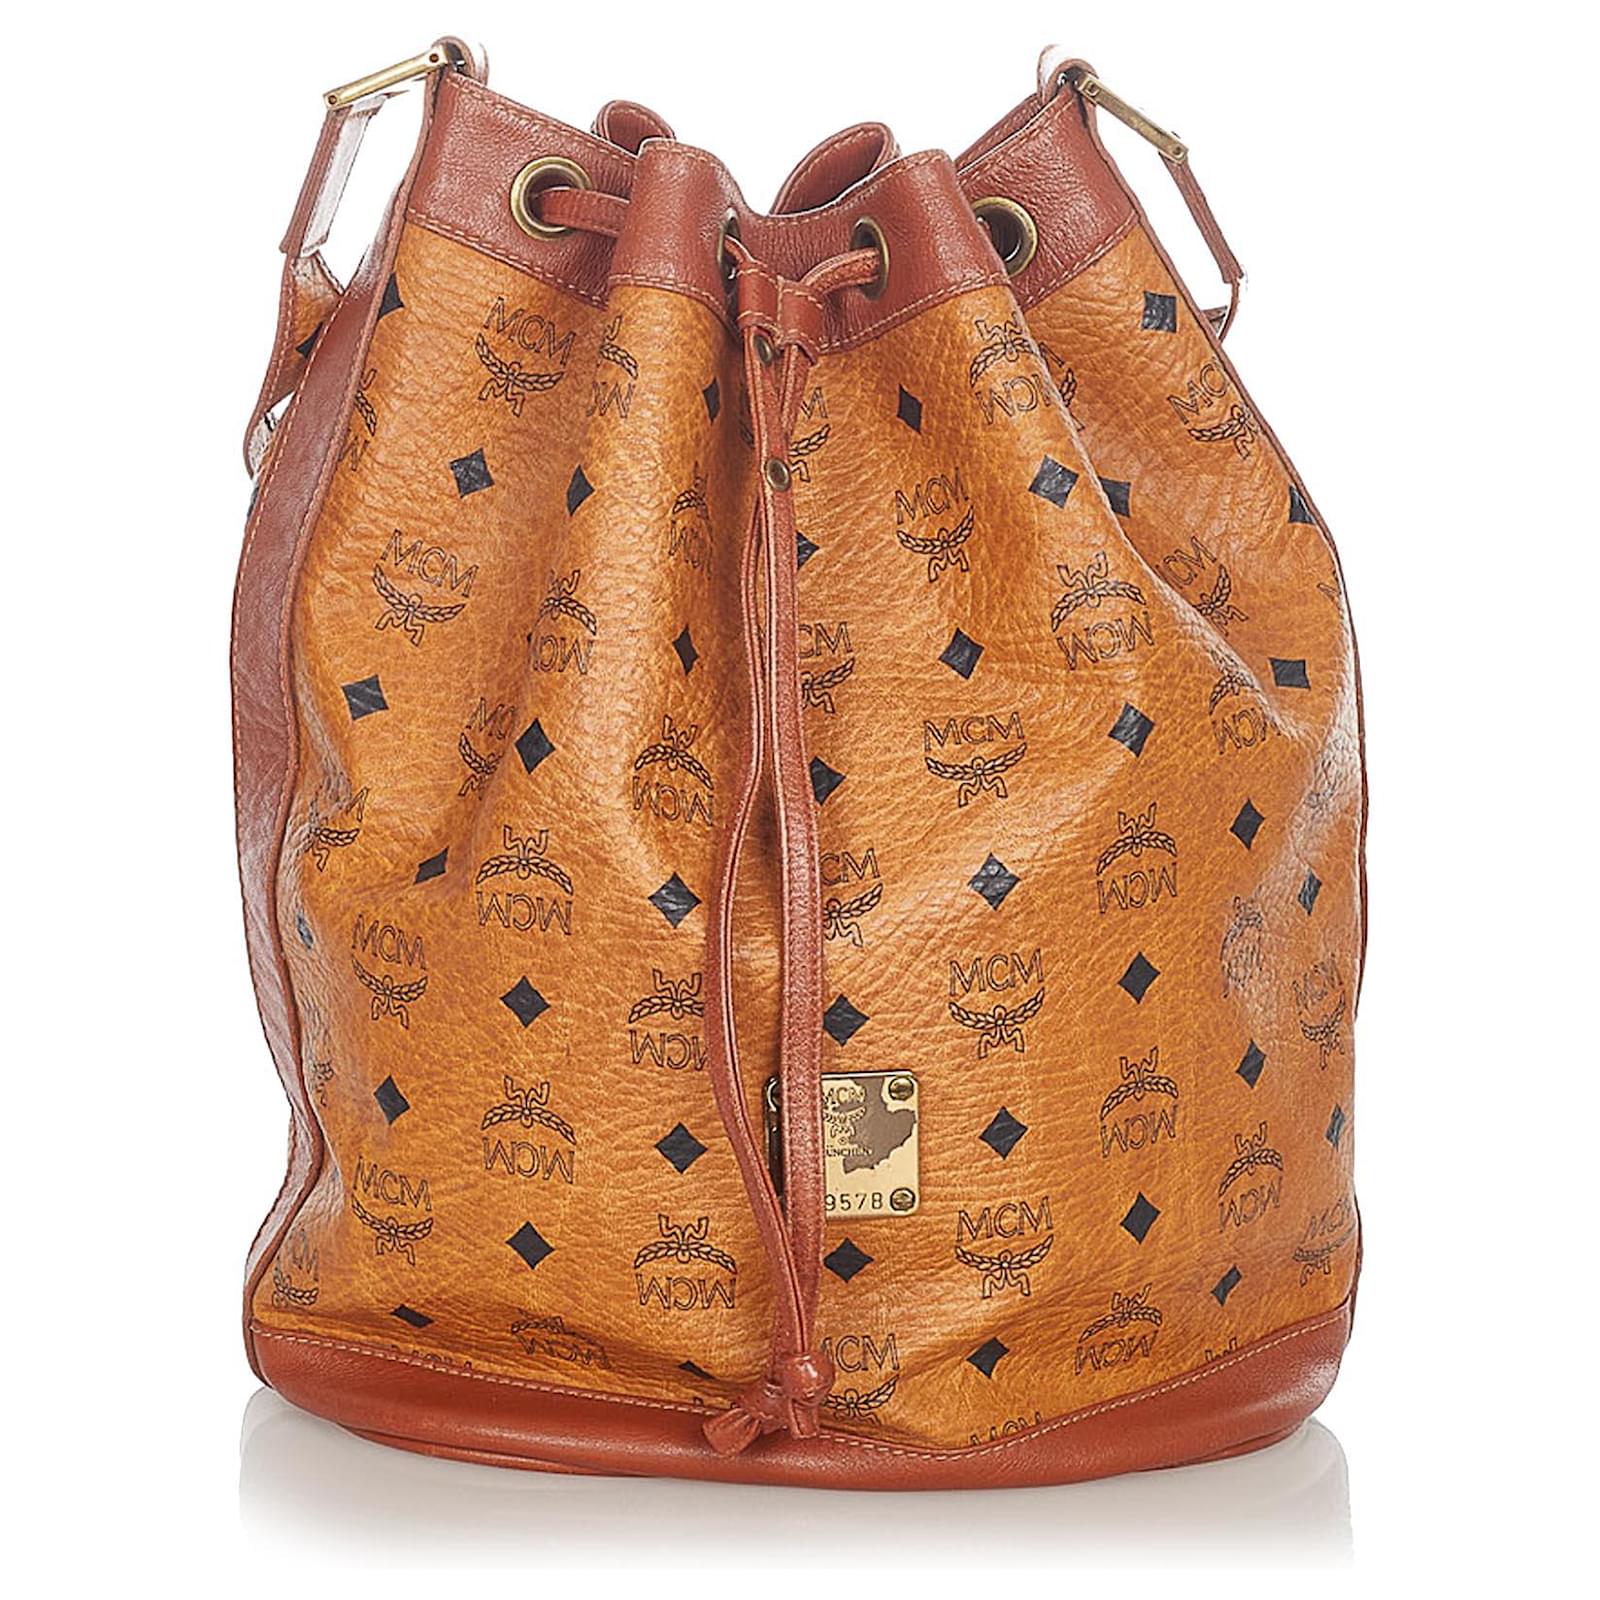 Vintage-Style MCM Leather Bucket Drawstring Shoulder Bag for Ladies